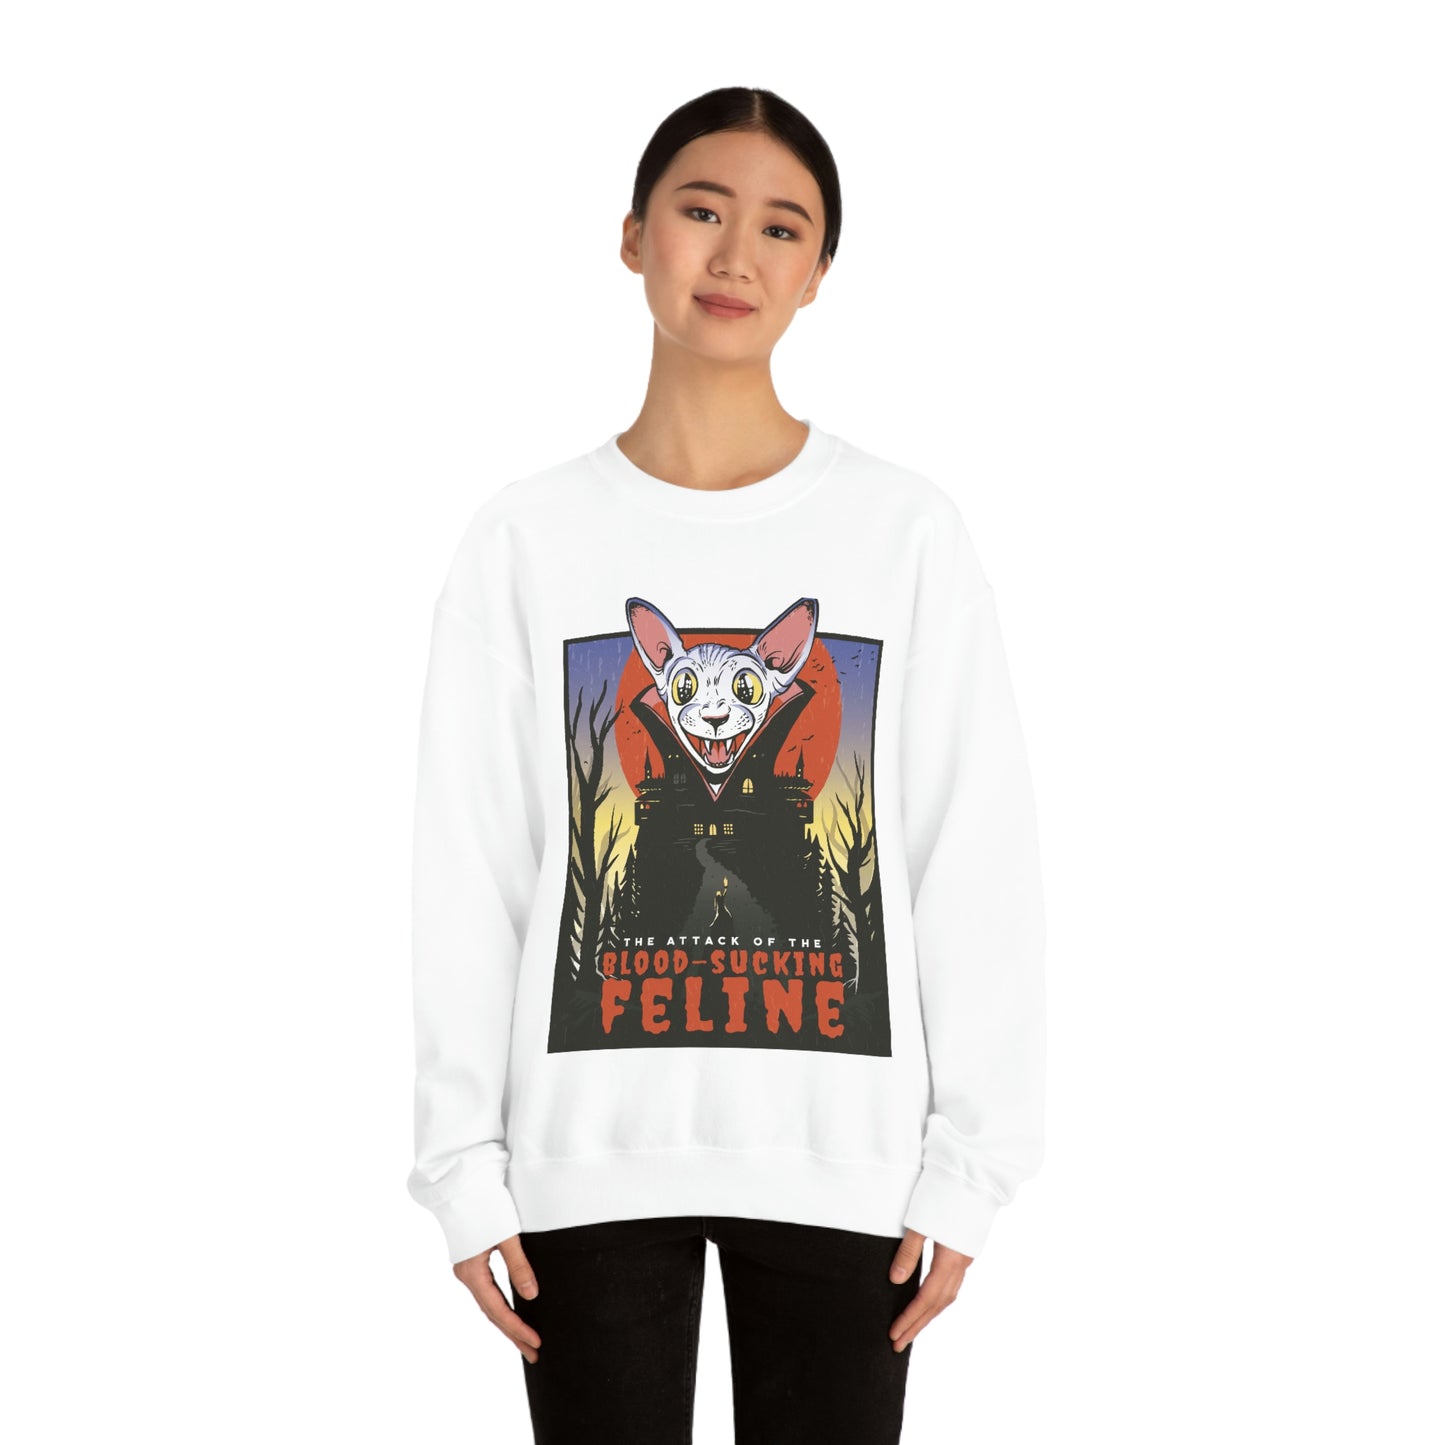 Goth Aesthetic Sweatshirt